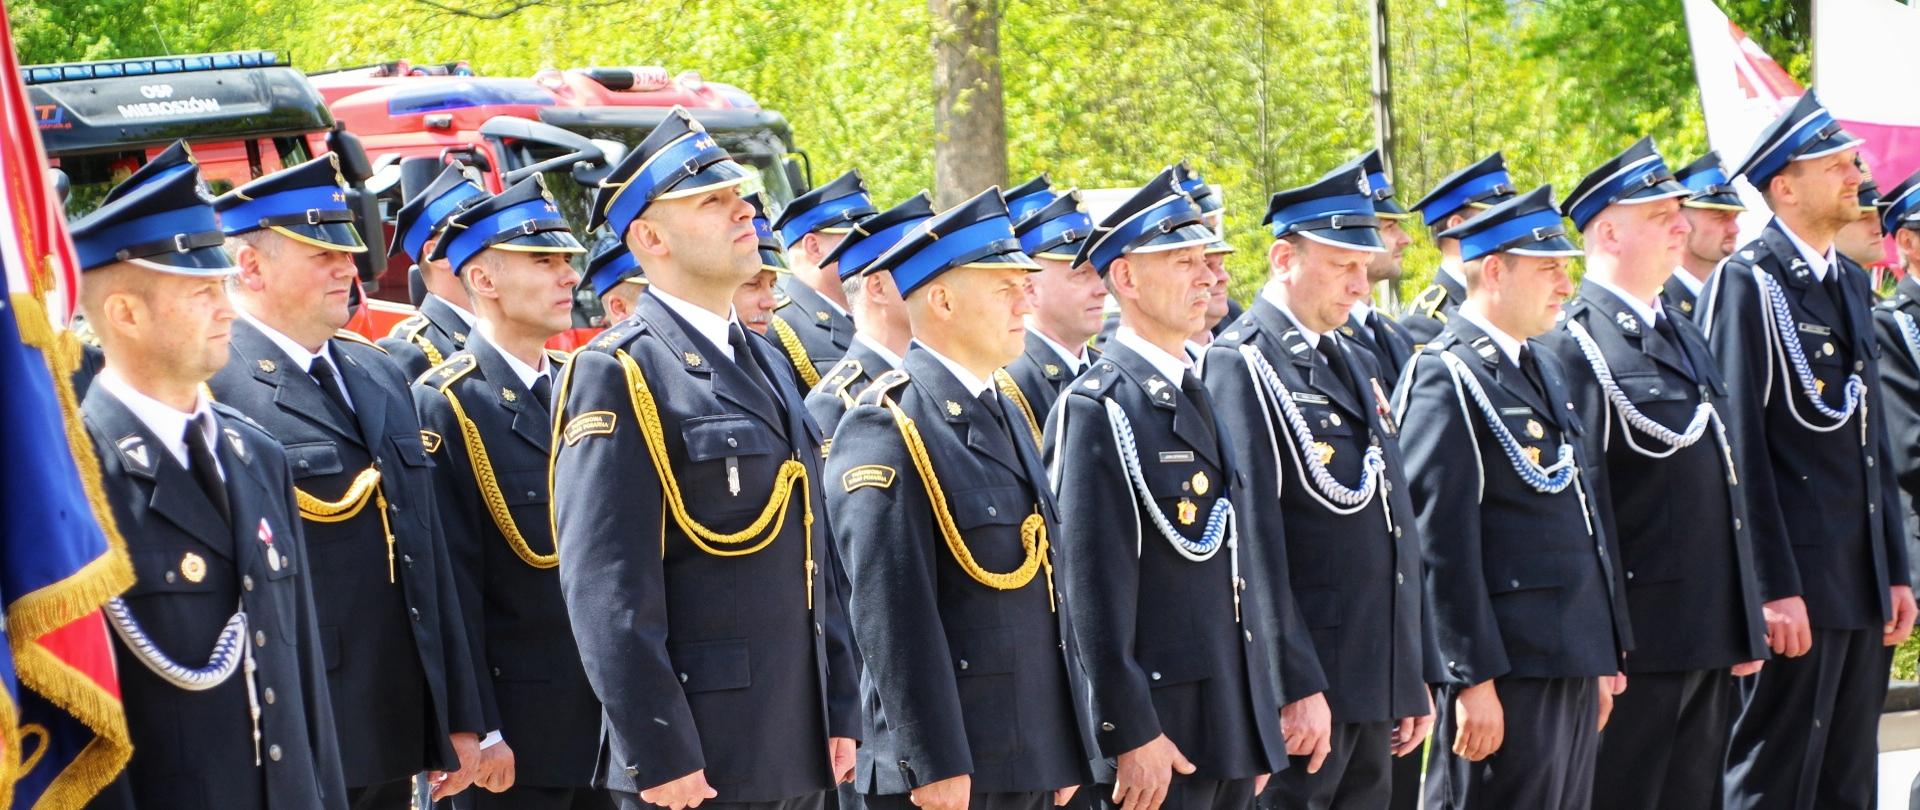 Strażacy w granatowych mundurach wyjściowych stoją w szeregu przed remizą OSP Mieroszów